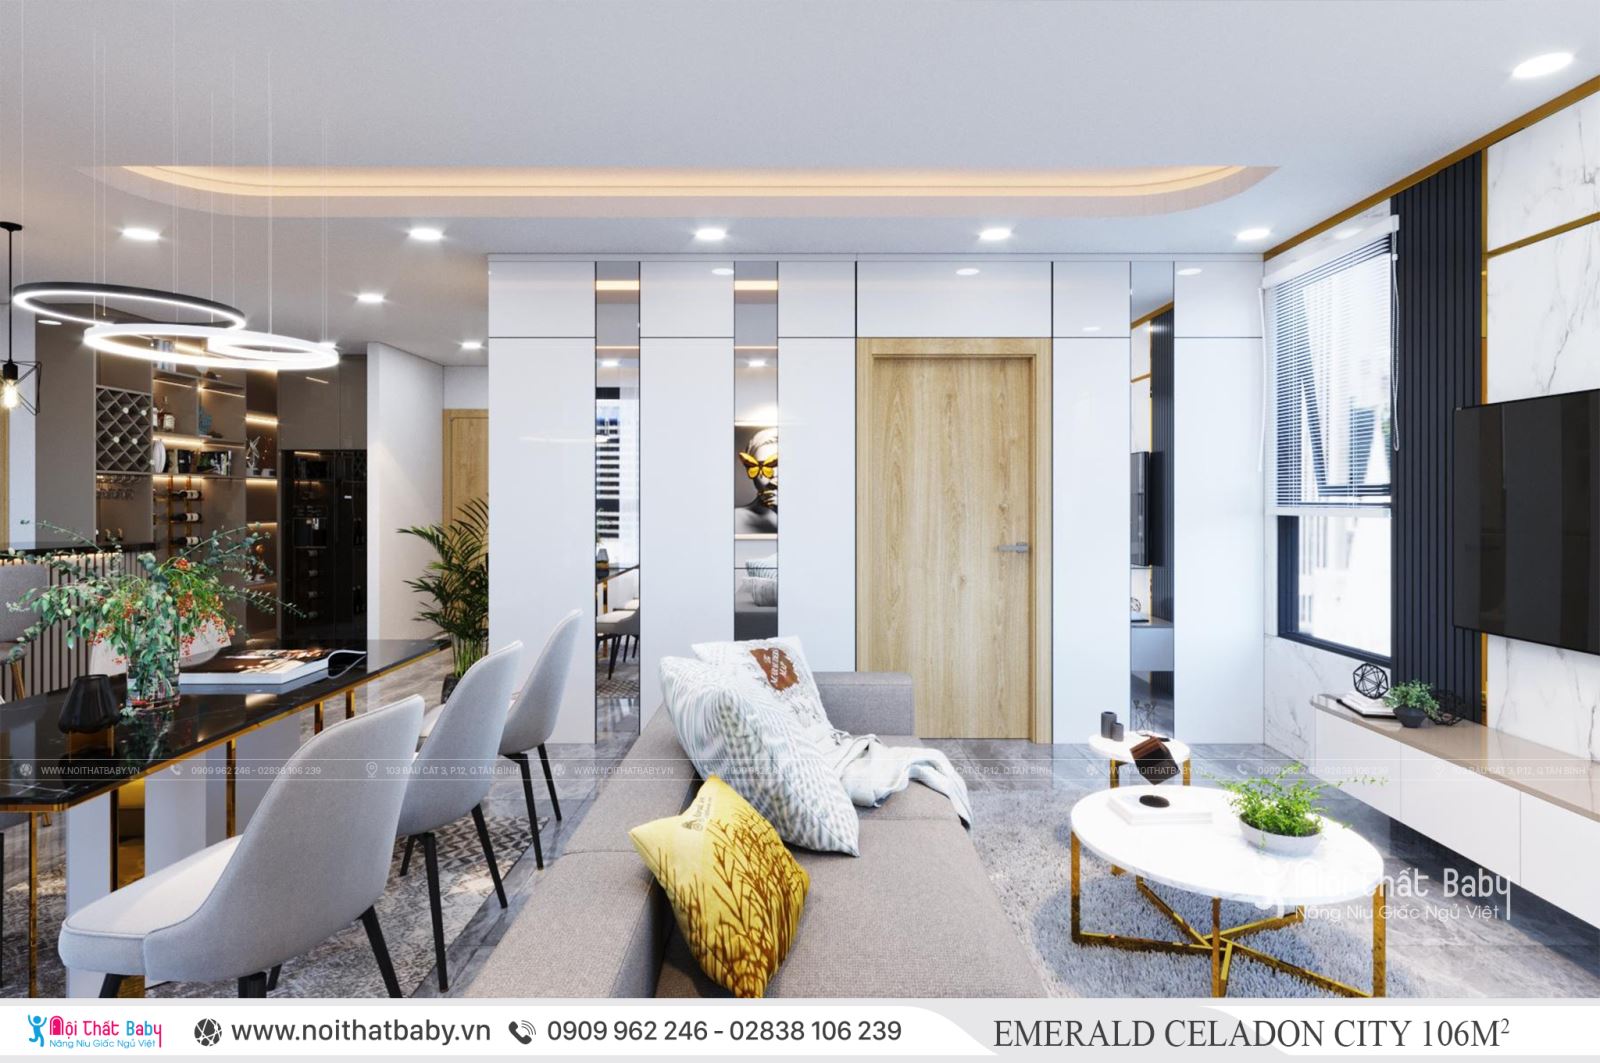 Thiết kế nội thất nguyên căn hiện đại tại Emerald Celadon City 106m2